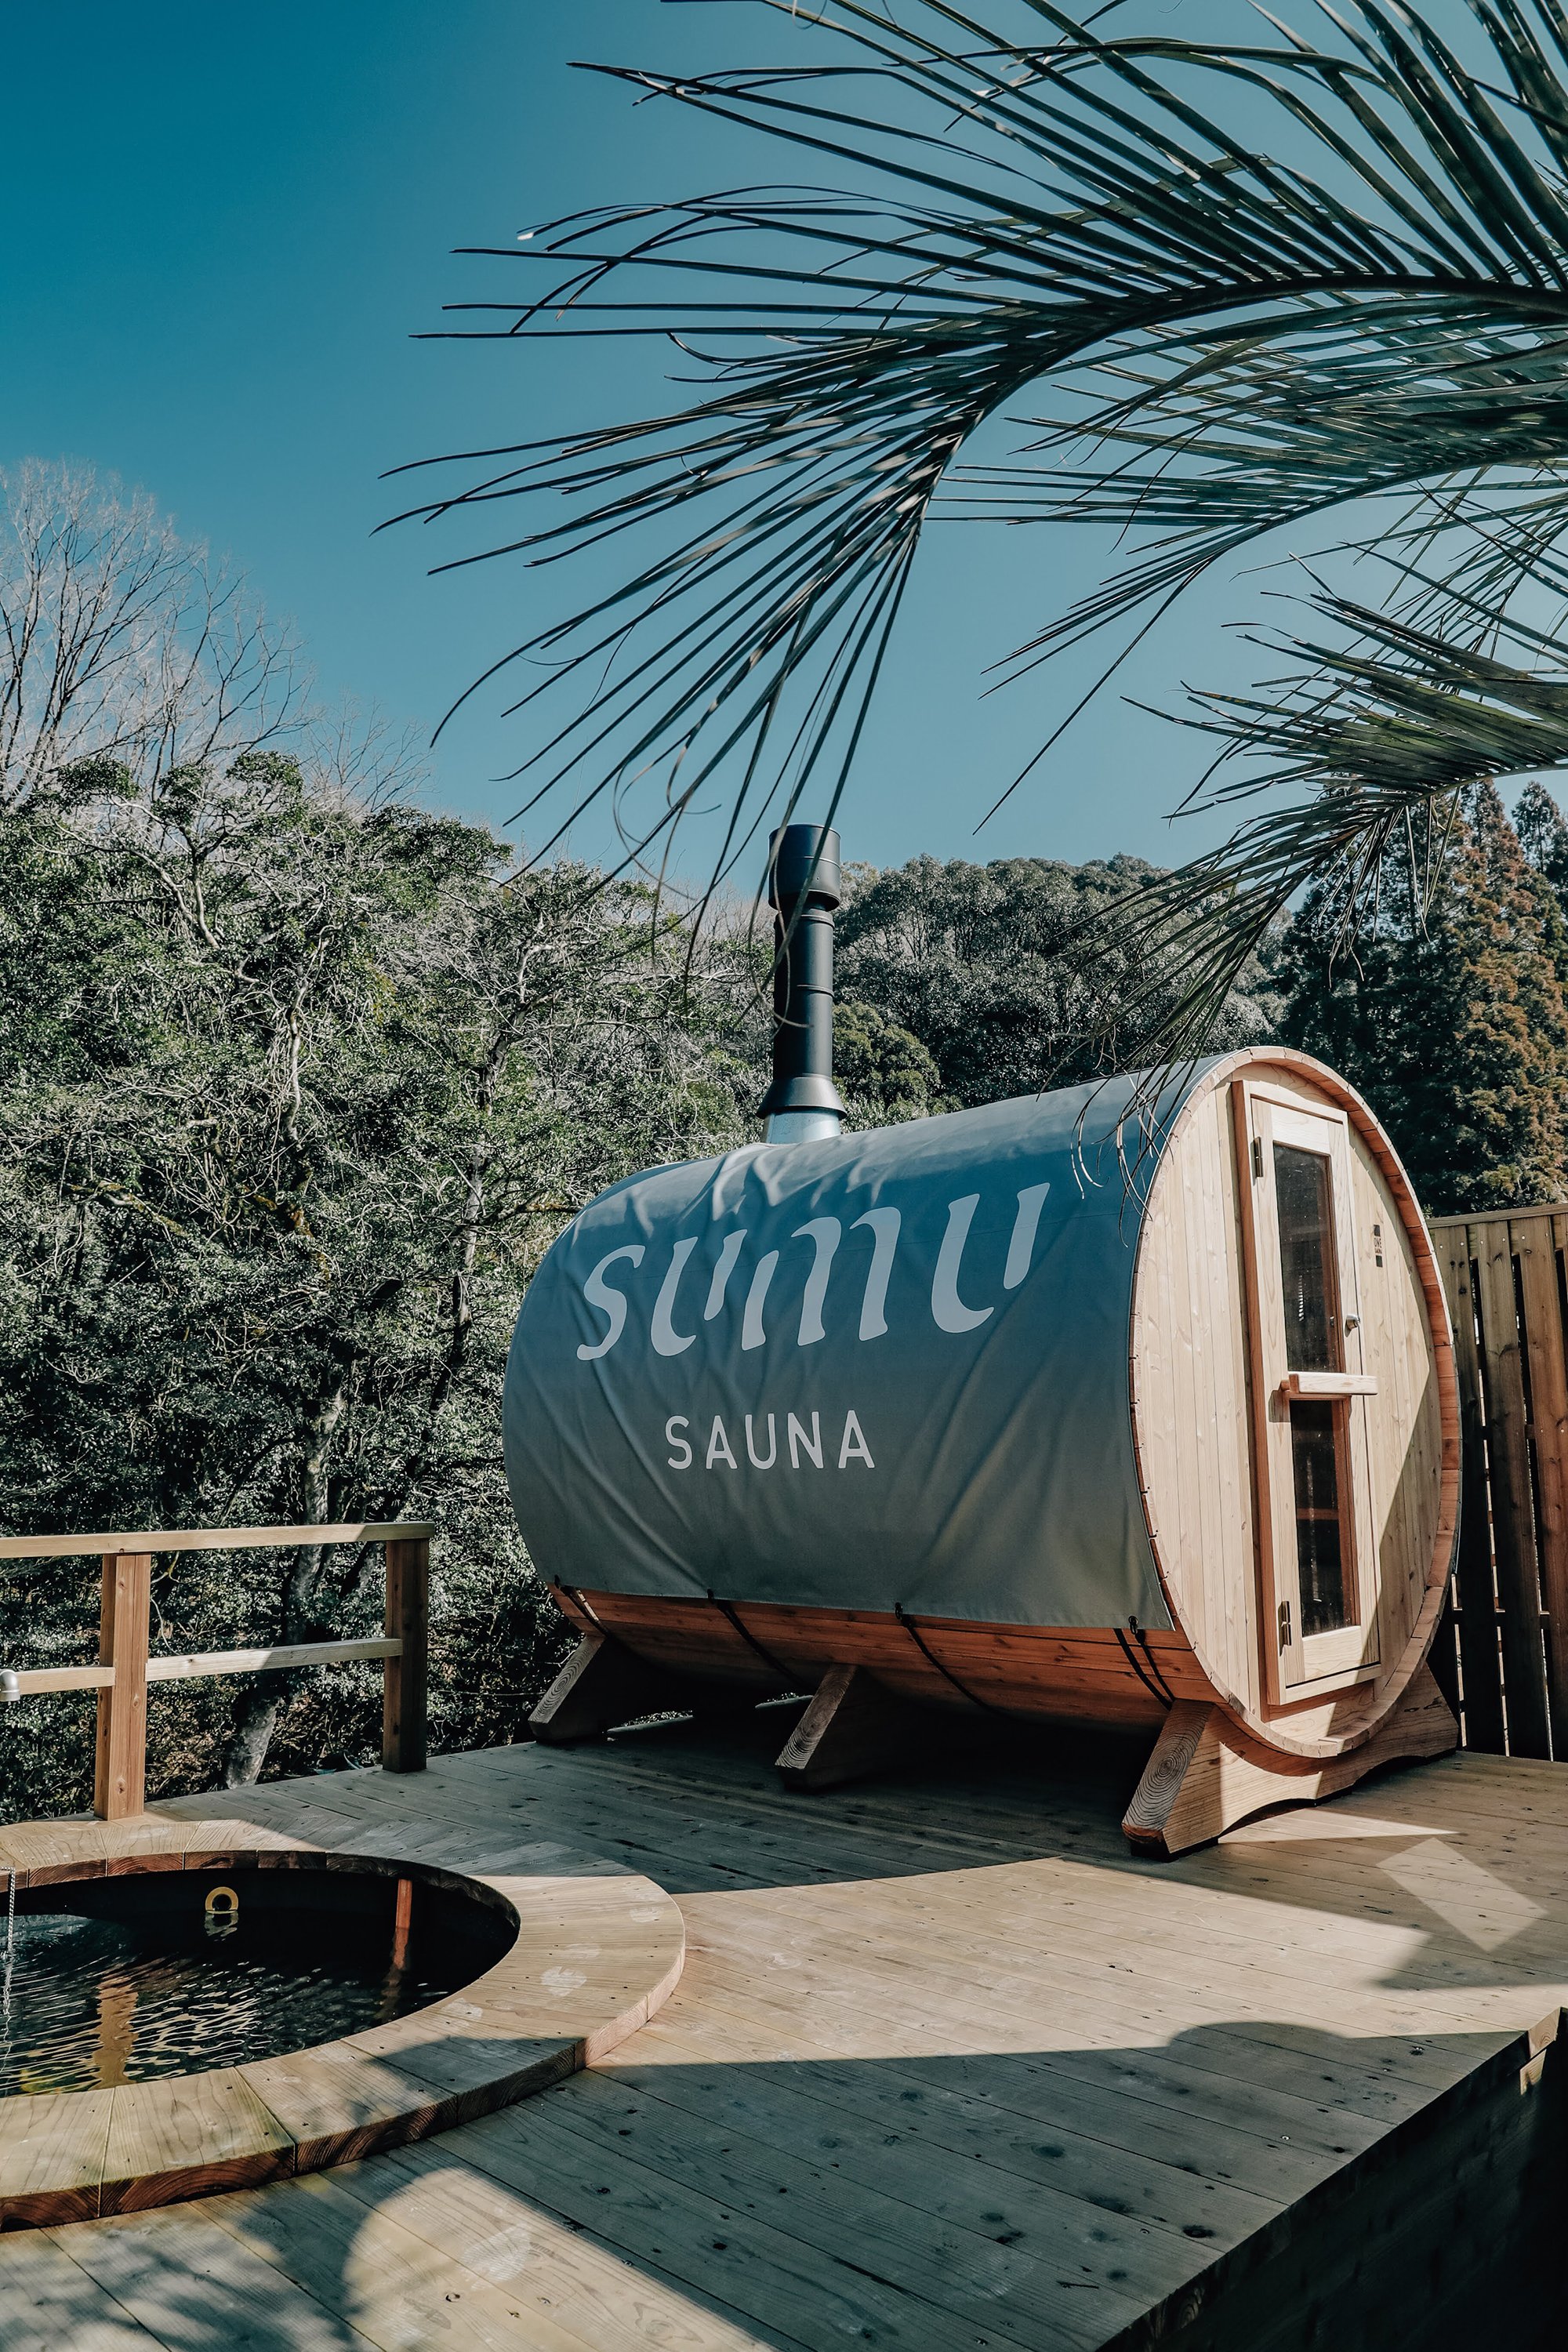 Diesel - sumu sauna, ジェネリック - Image 1